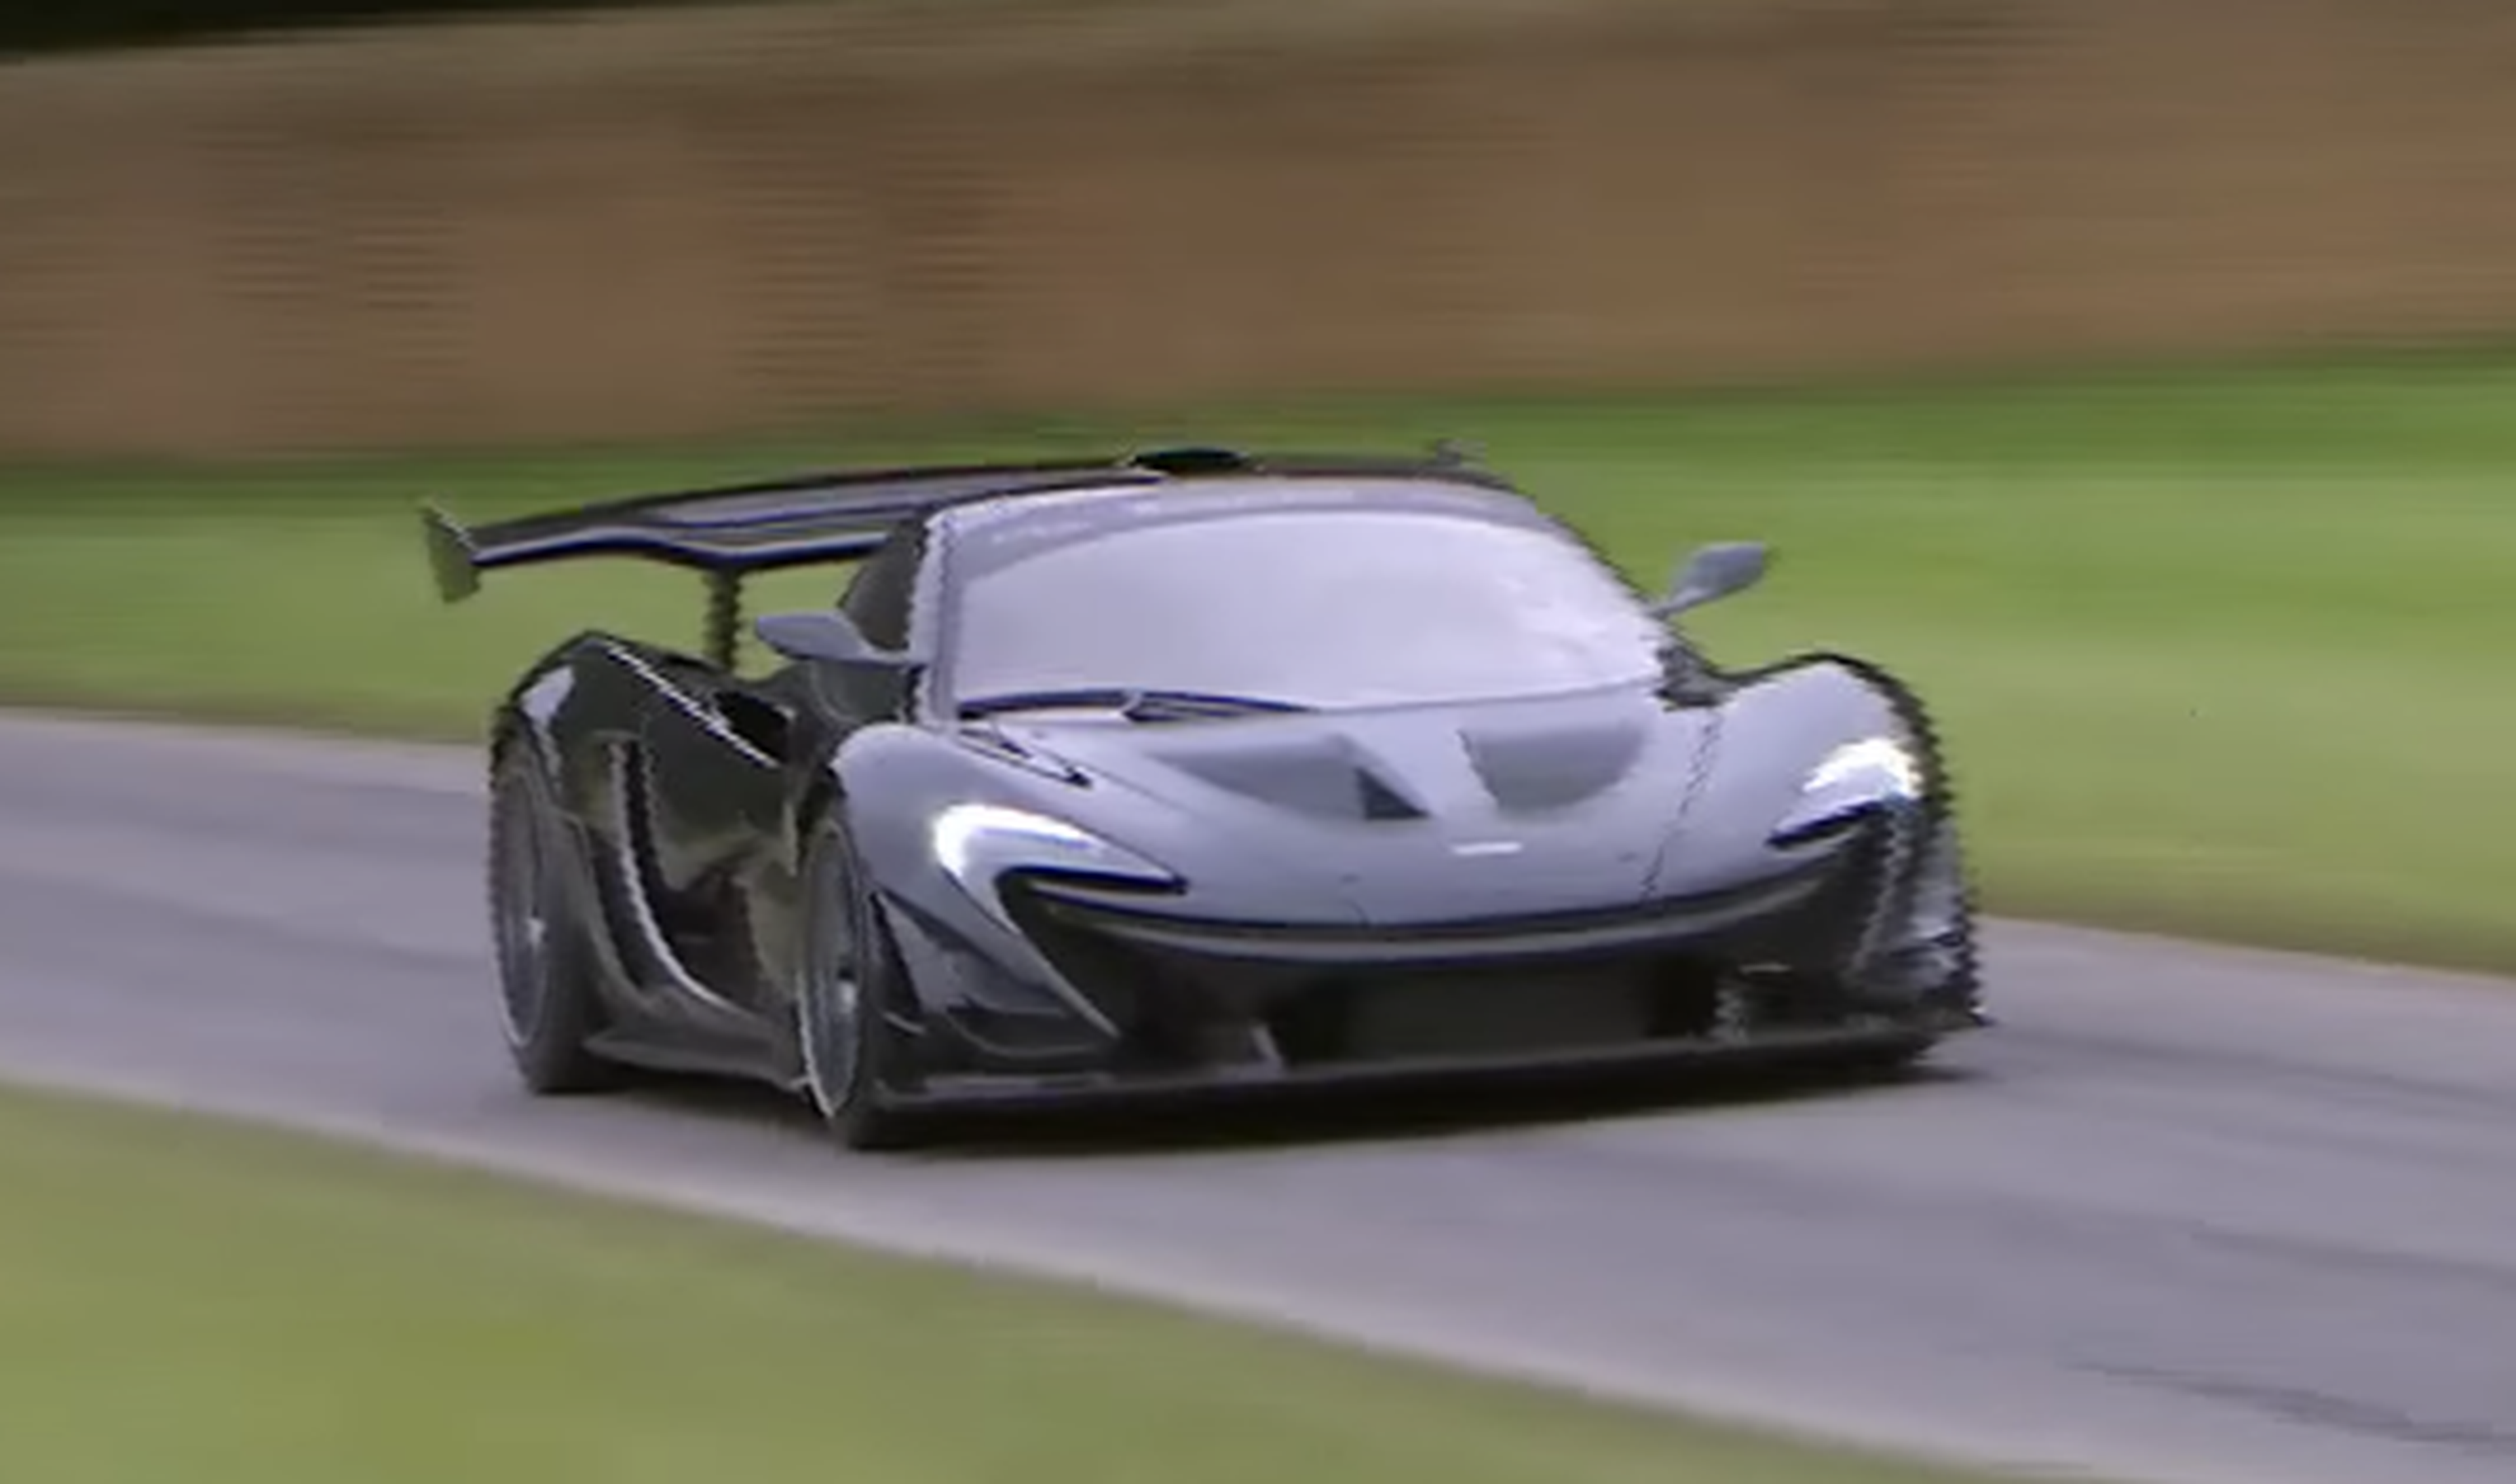 VÍDEO: ¡El McLaren P1 hizo récord en la ascensión a Goodwood!